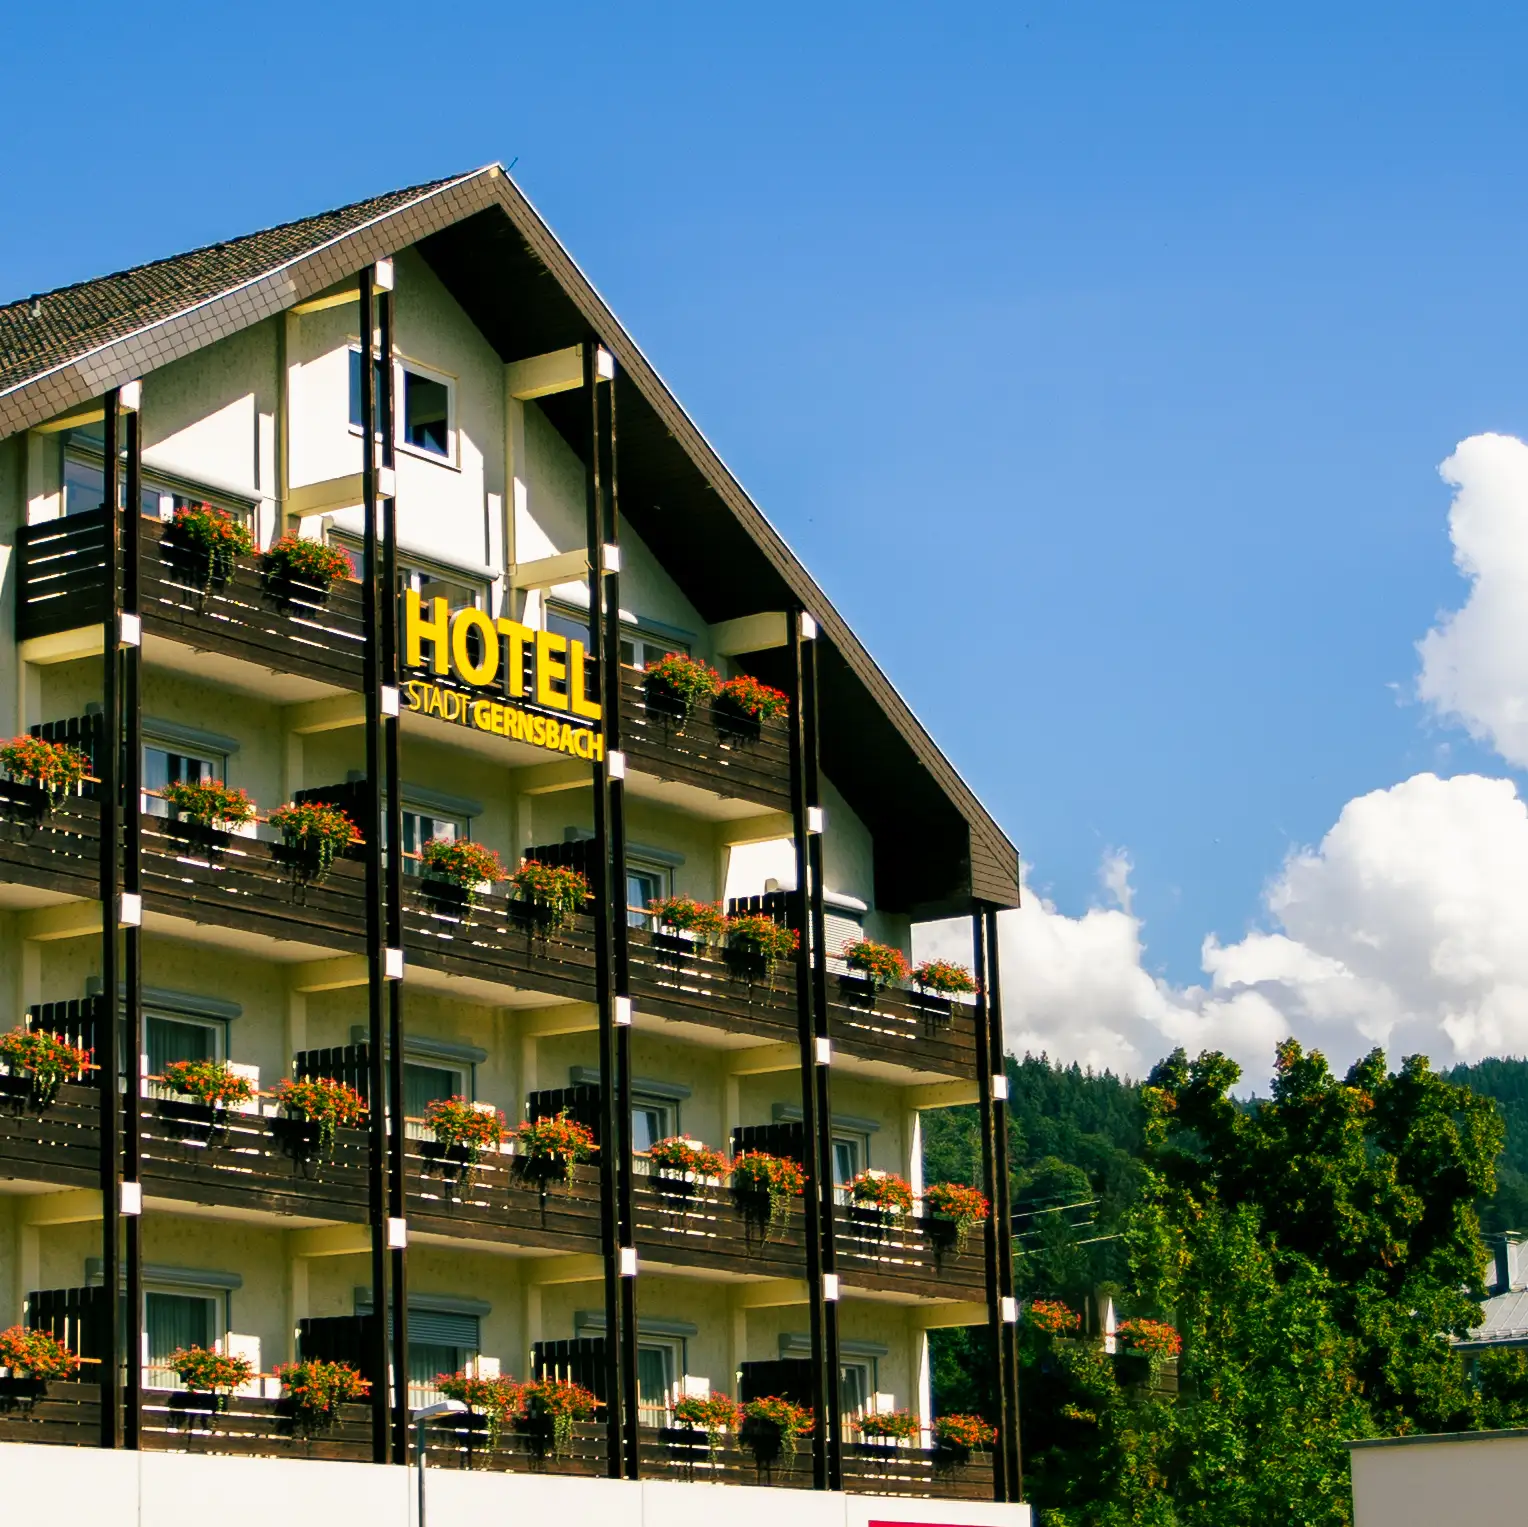 Hotel Stadt Gernsbach. Urlaub im Schwarzwald.